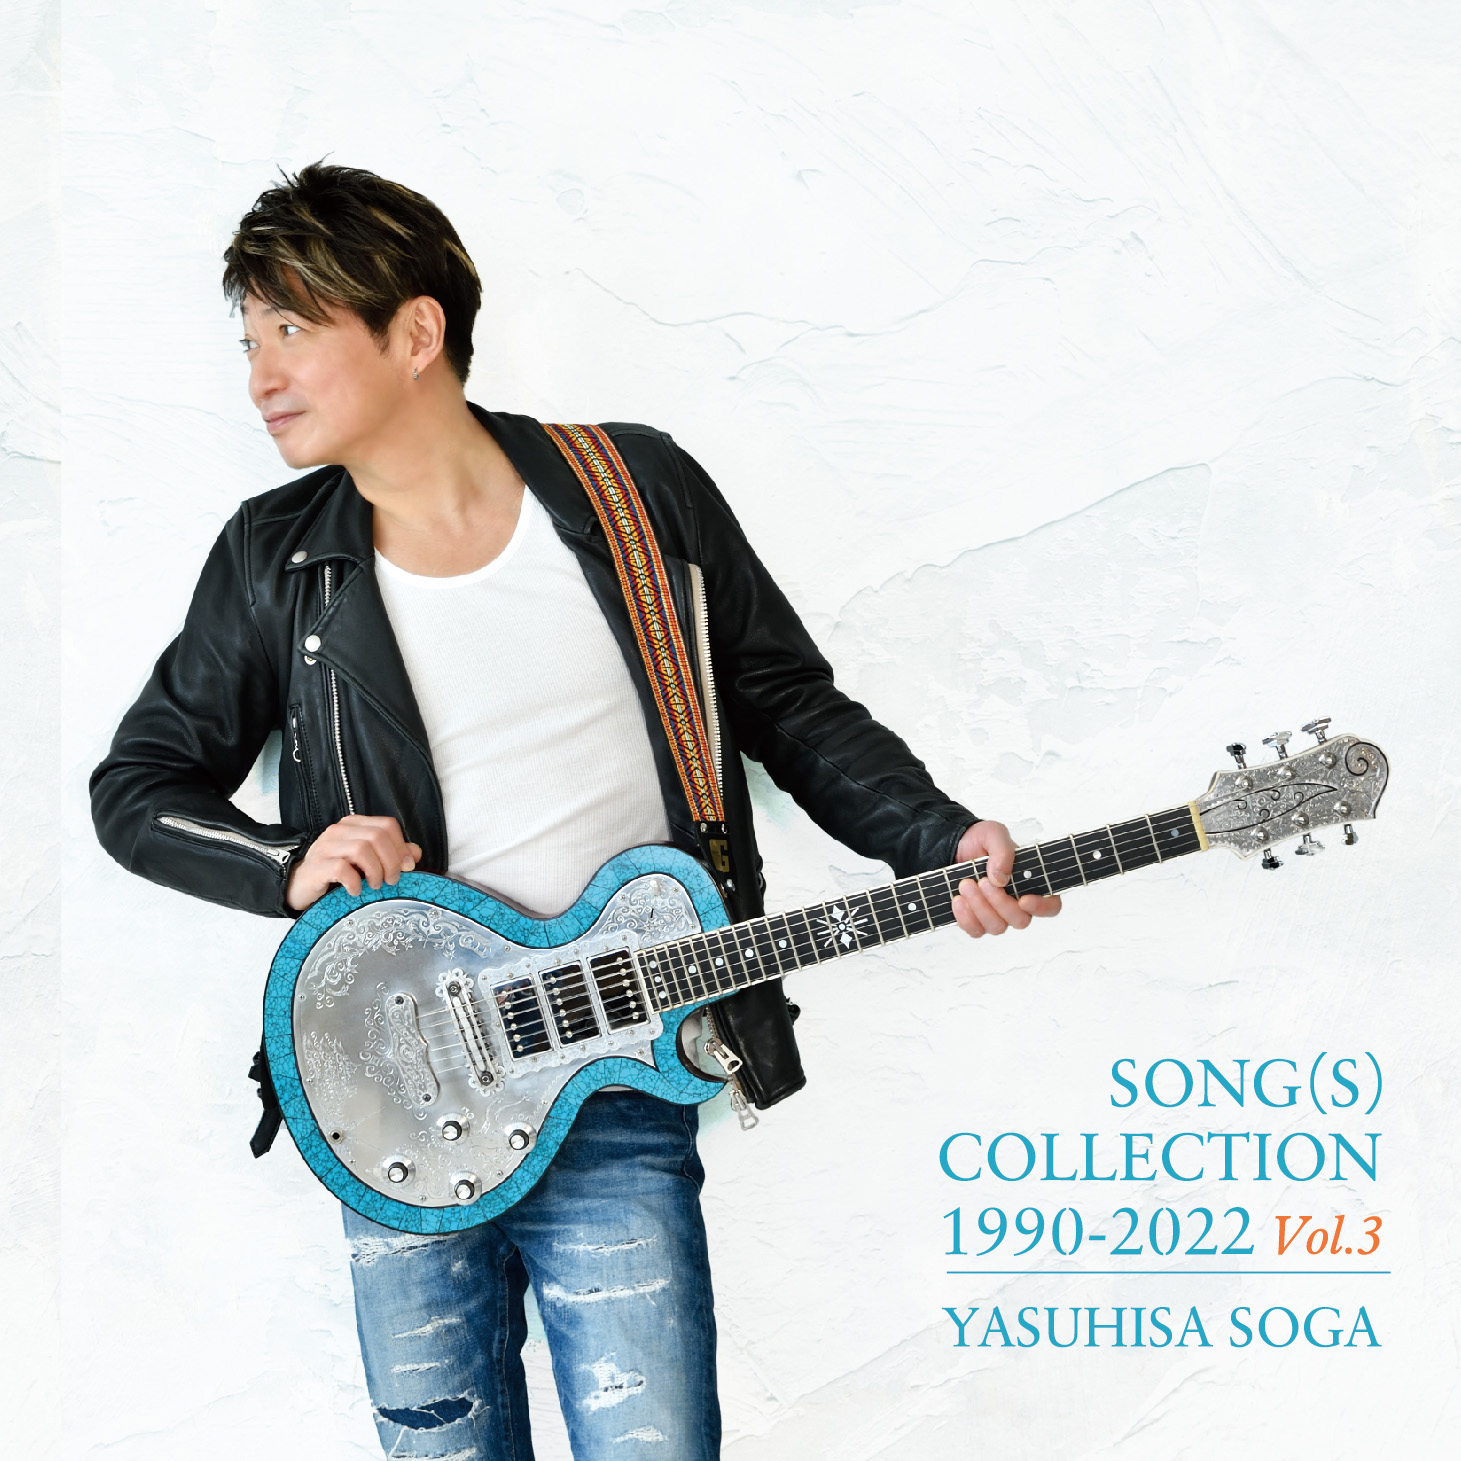 曾我泰久 SONG(S) COLLECTION Vol.3